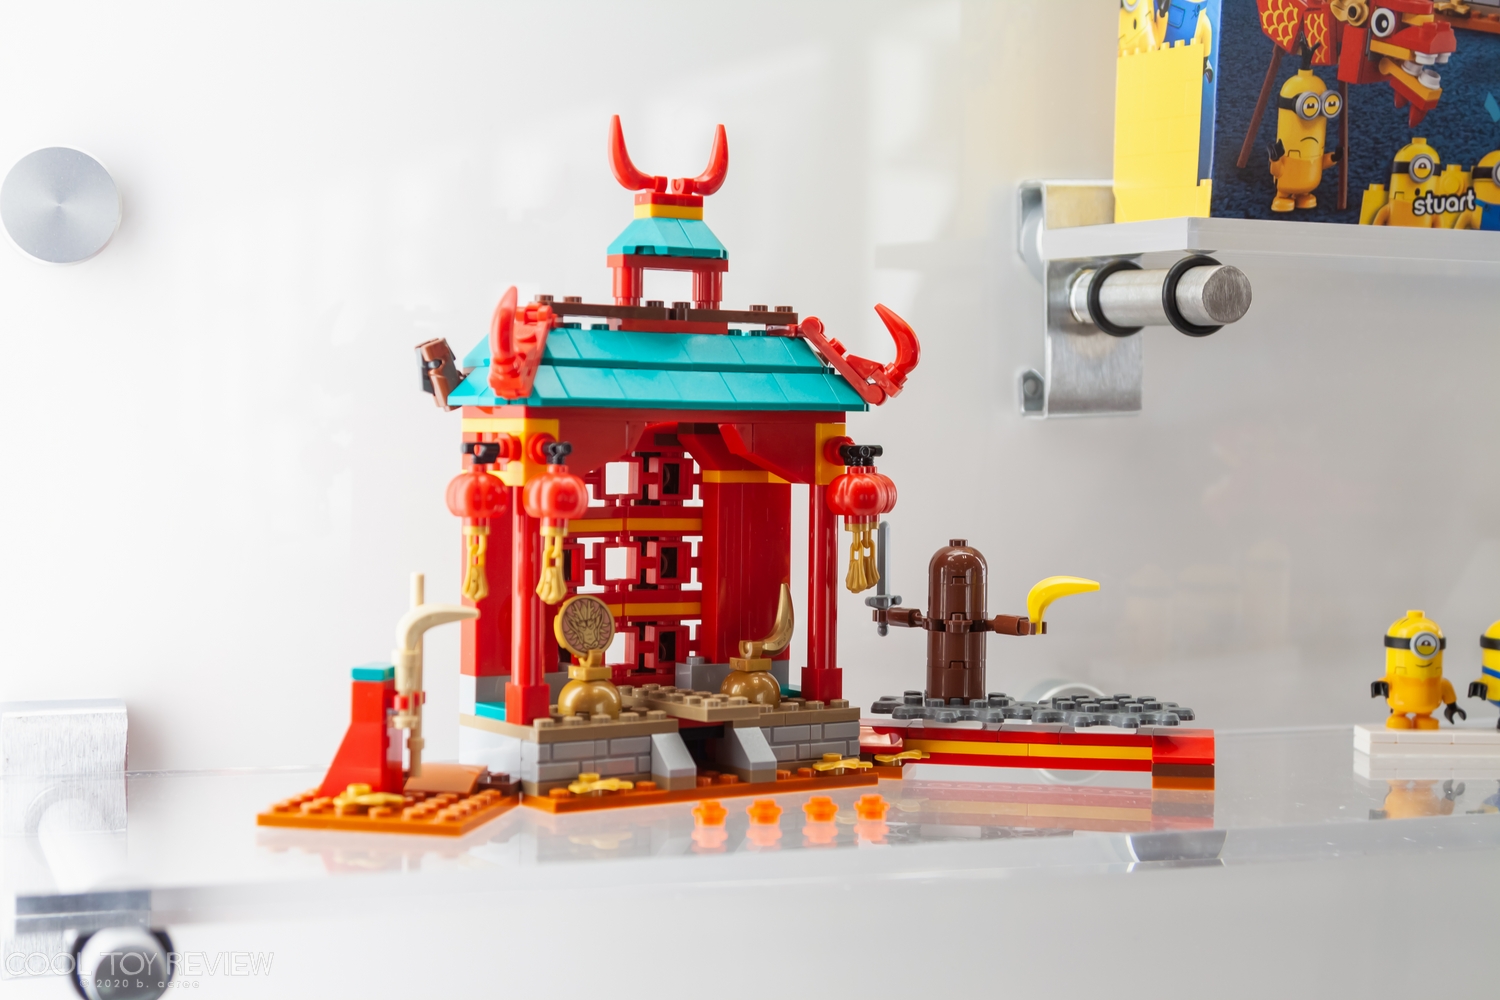 2020-Toy-Fair-LEGO-002.jpg